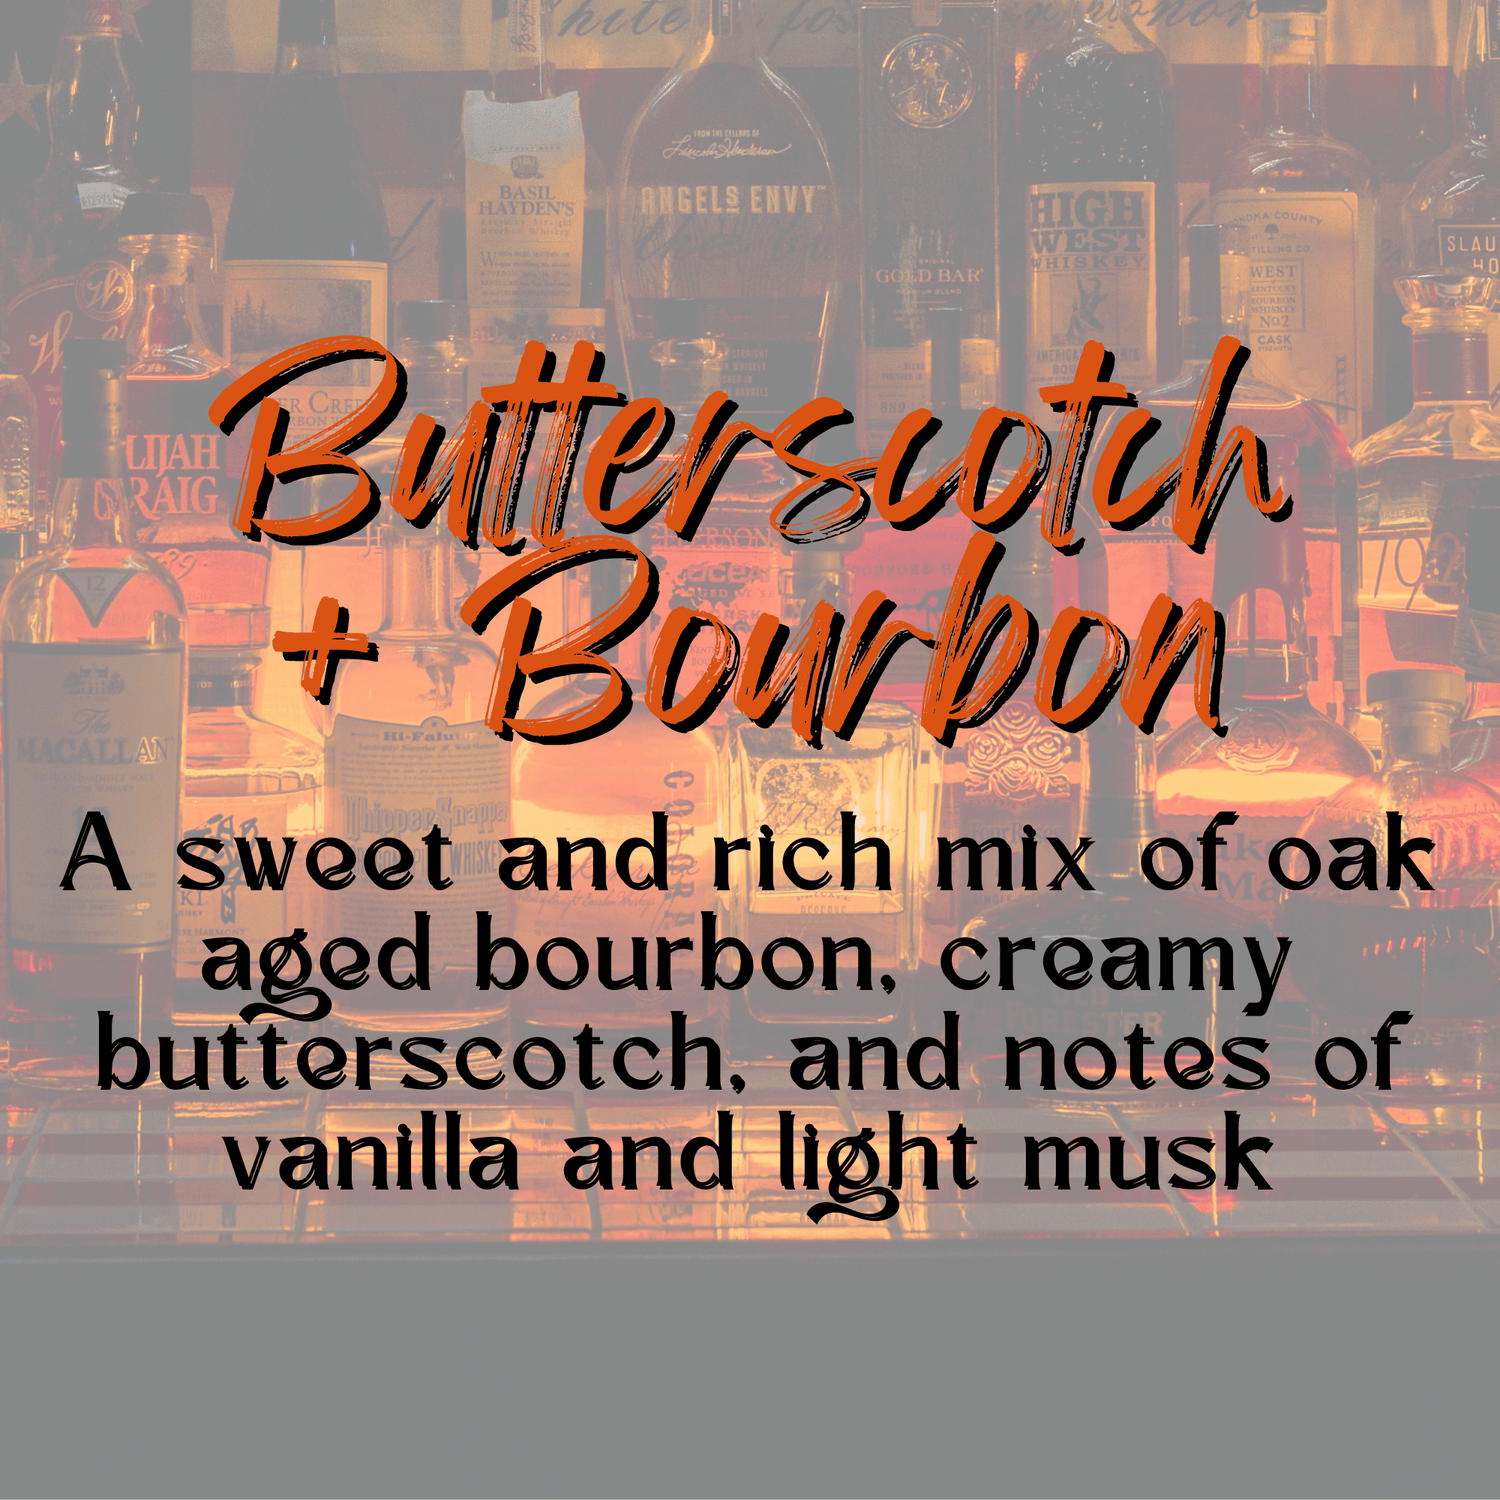 Butterscotch + Bourbon